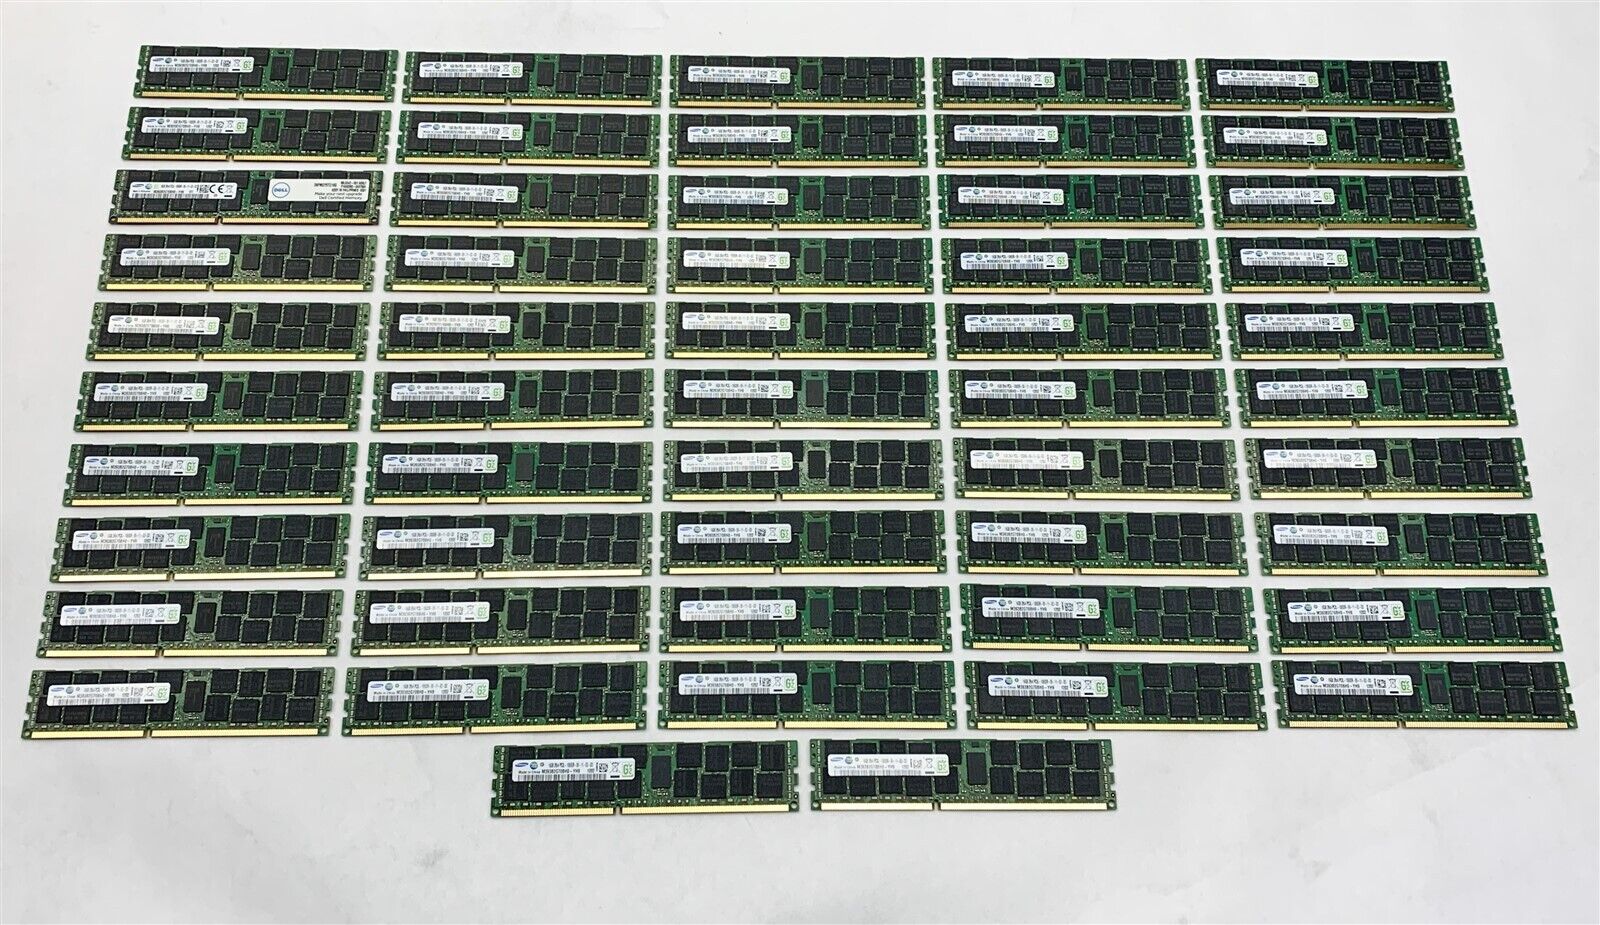 Samsung M393B2G70BH0-YH9 832GB (52*16GB) PC3L-10600R DDR3 ECC Reg Server Memory